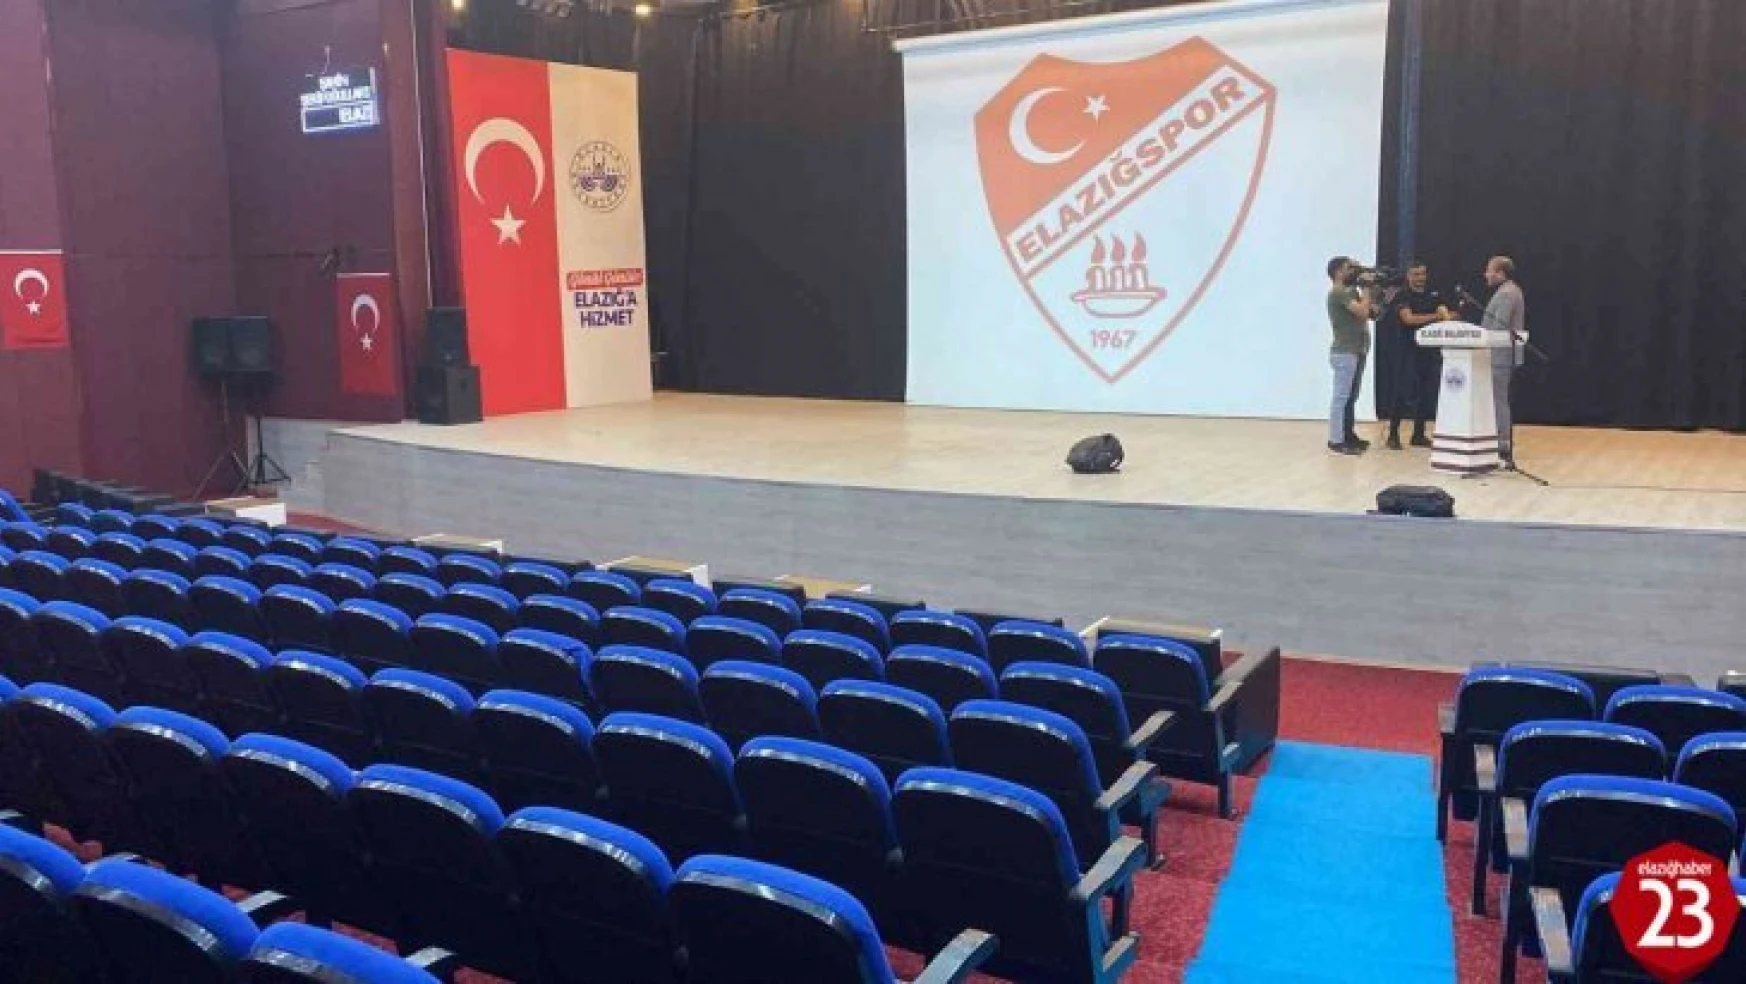 Elazığspor'da Mali Genel Kurul ertelendi